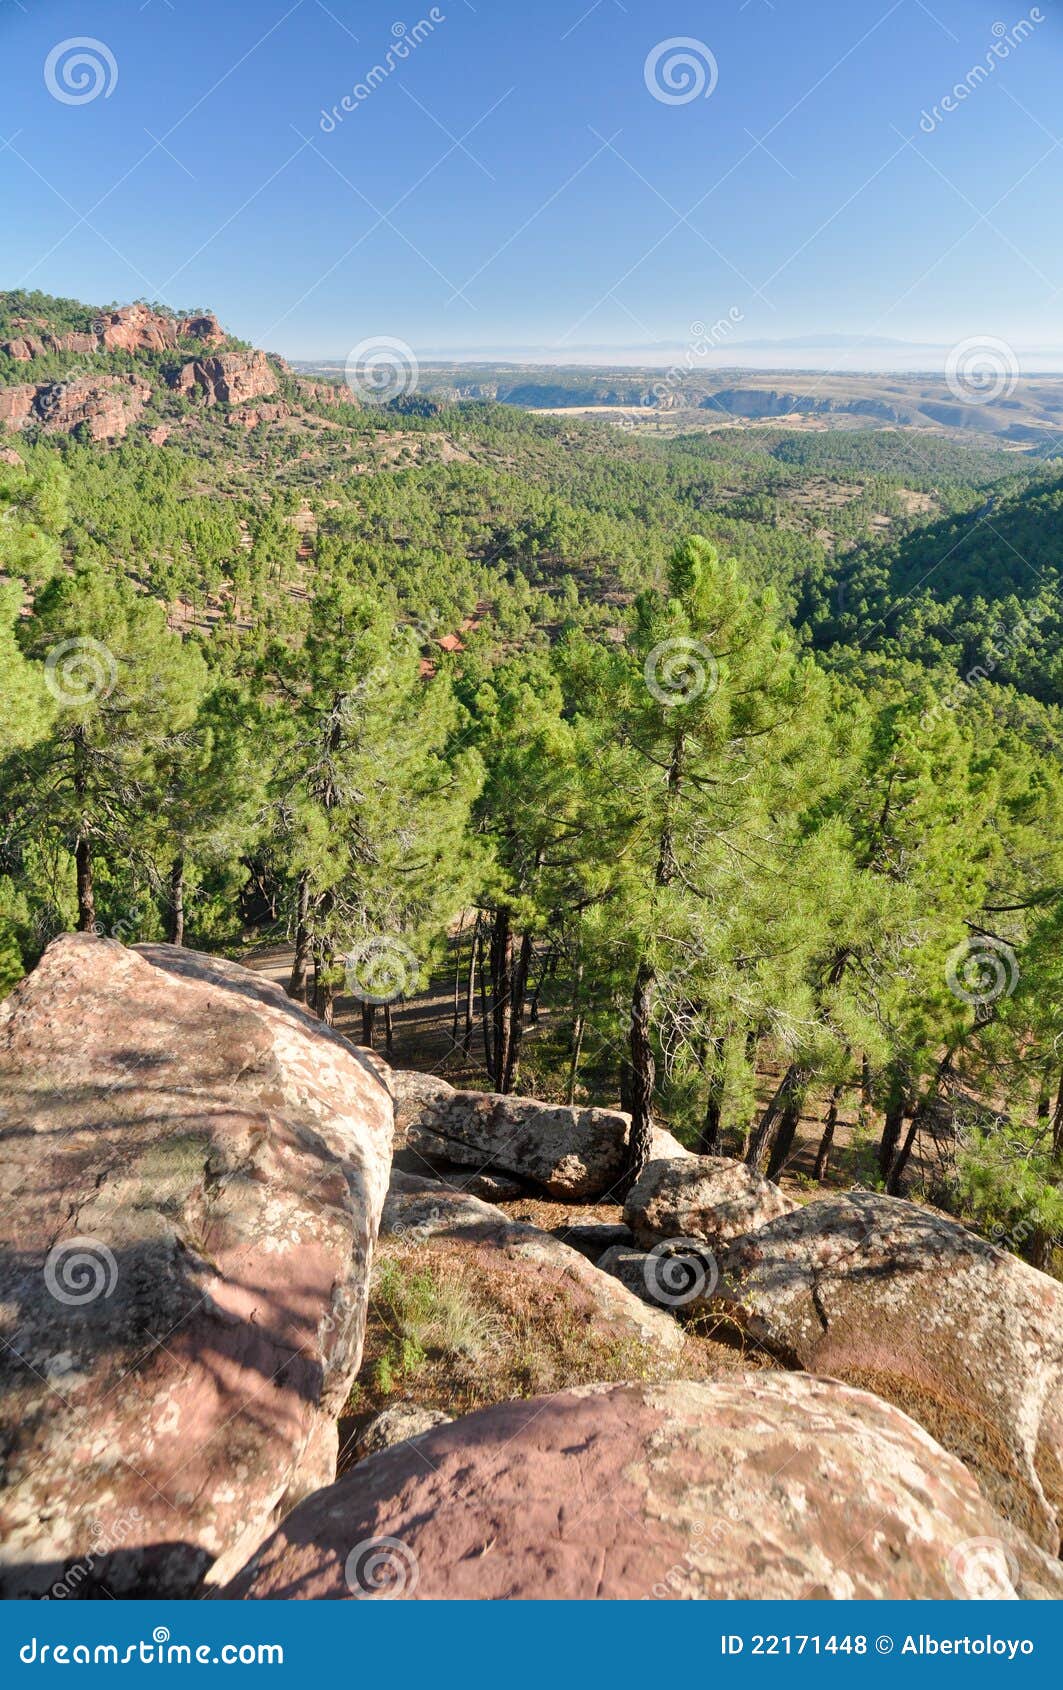 mediterranean forest at albarracin range, spain